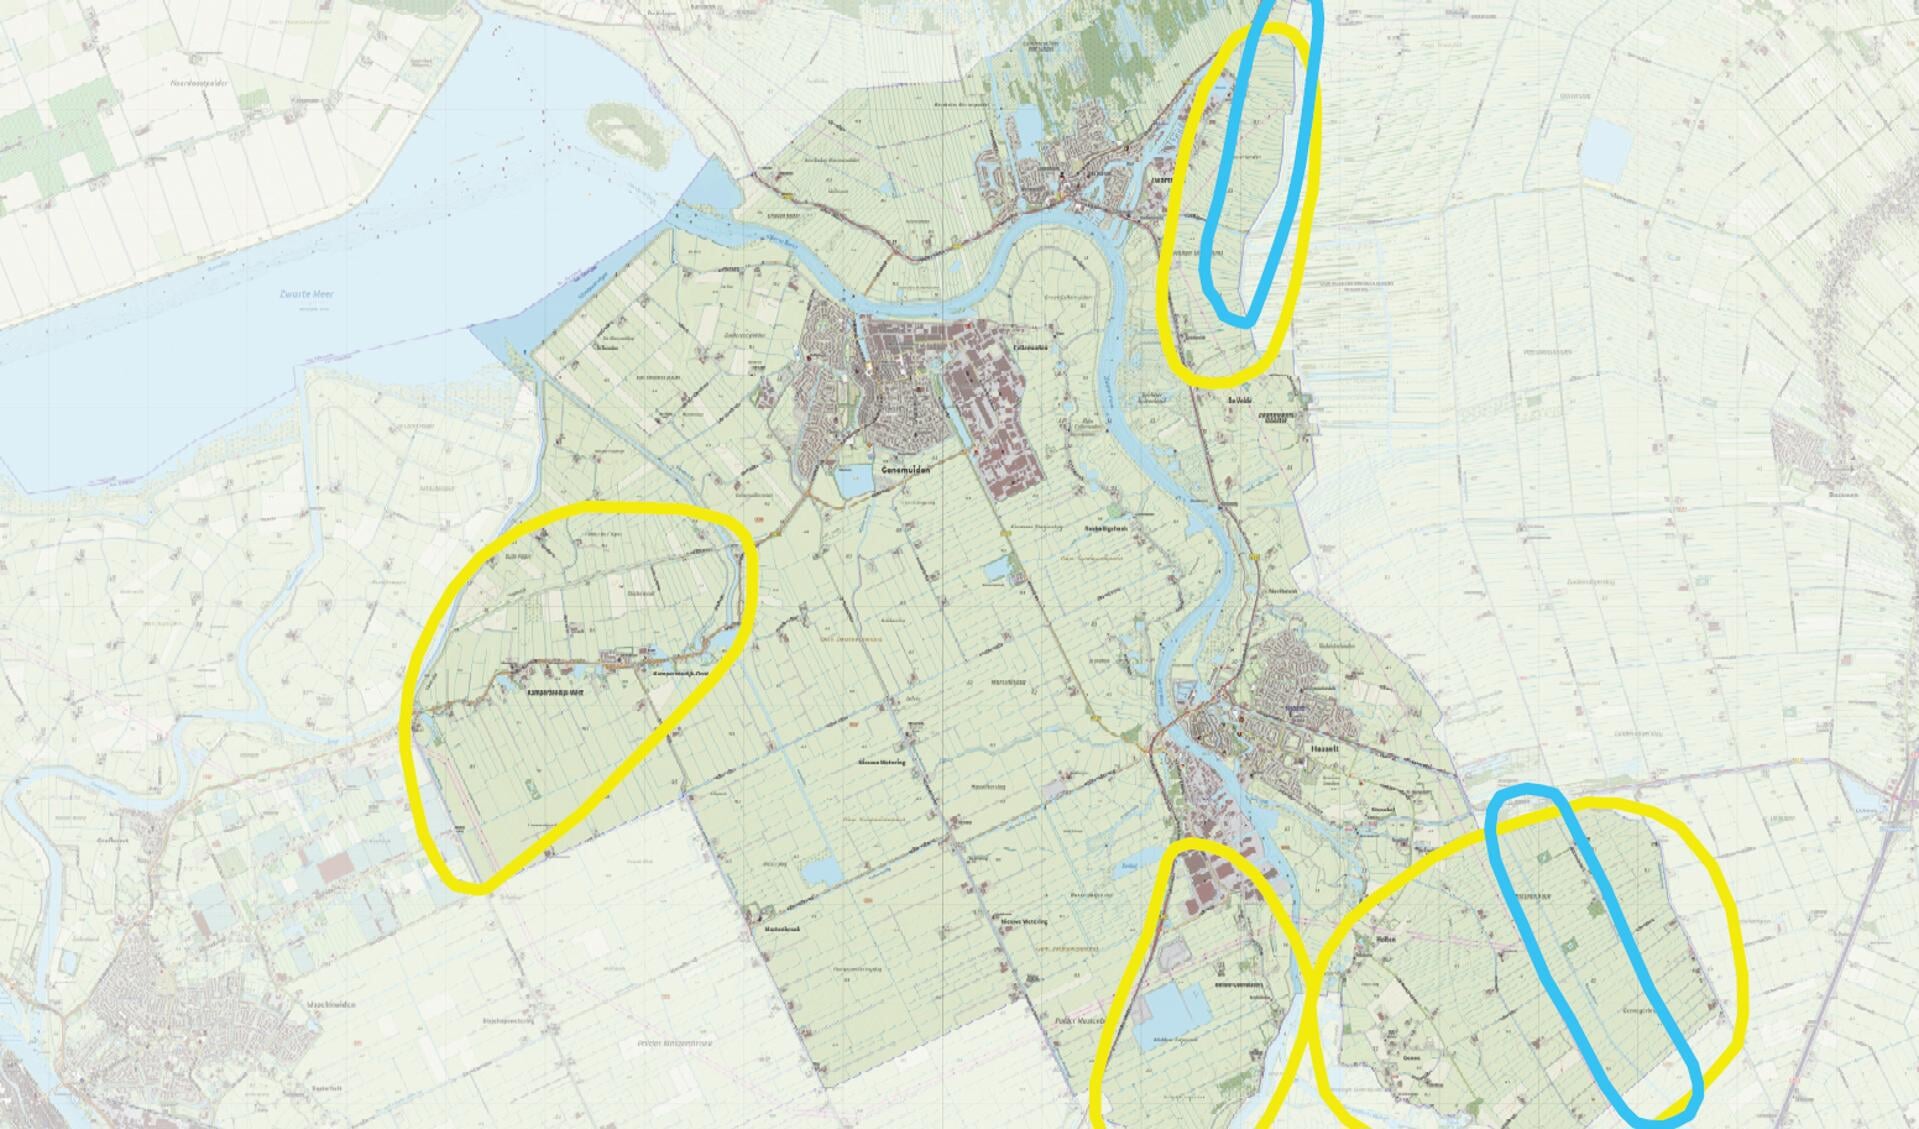 Eerder aangewezen zoekgebieden. (Blauw = windmolens, geel = zonnepanelen).